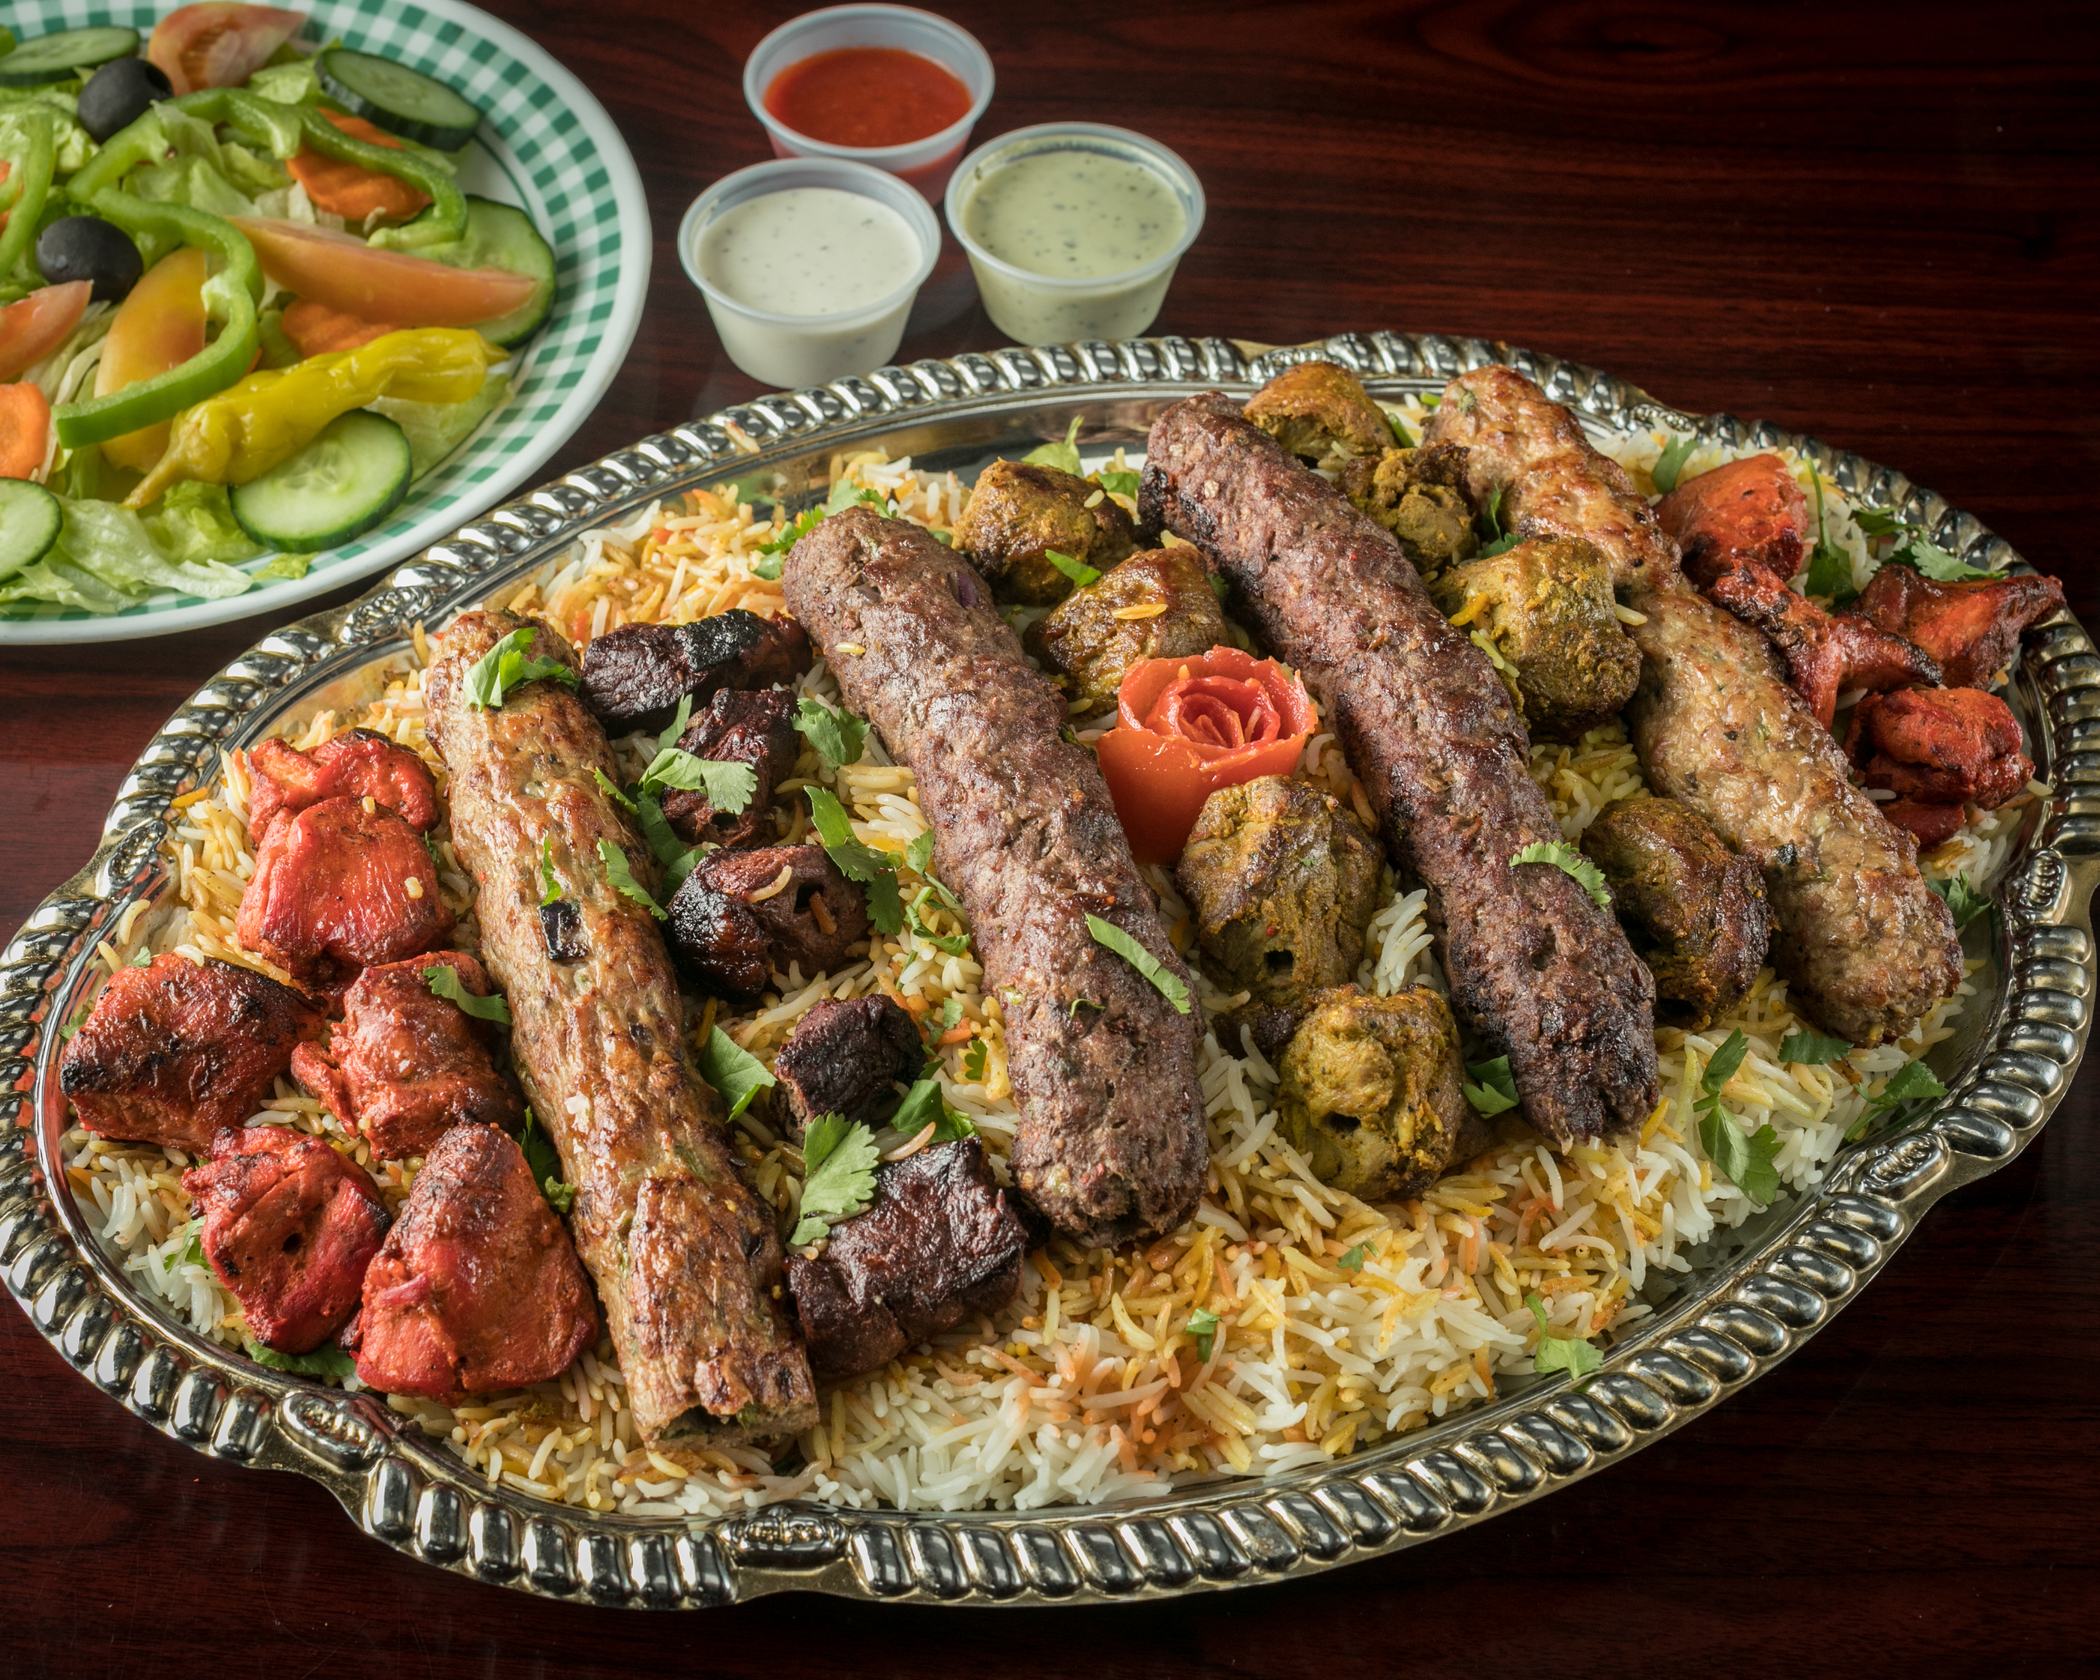 Order 48. Special 9 Skewers Platter food online from Peshawri Kebab store, Waltham on bringmethat.com